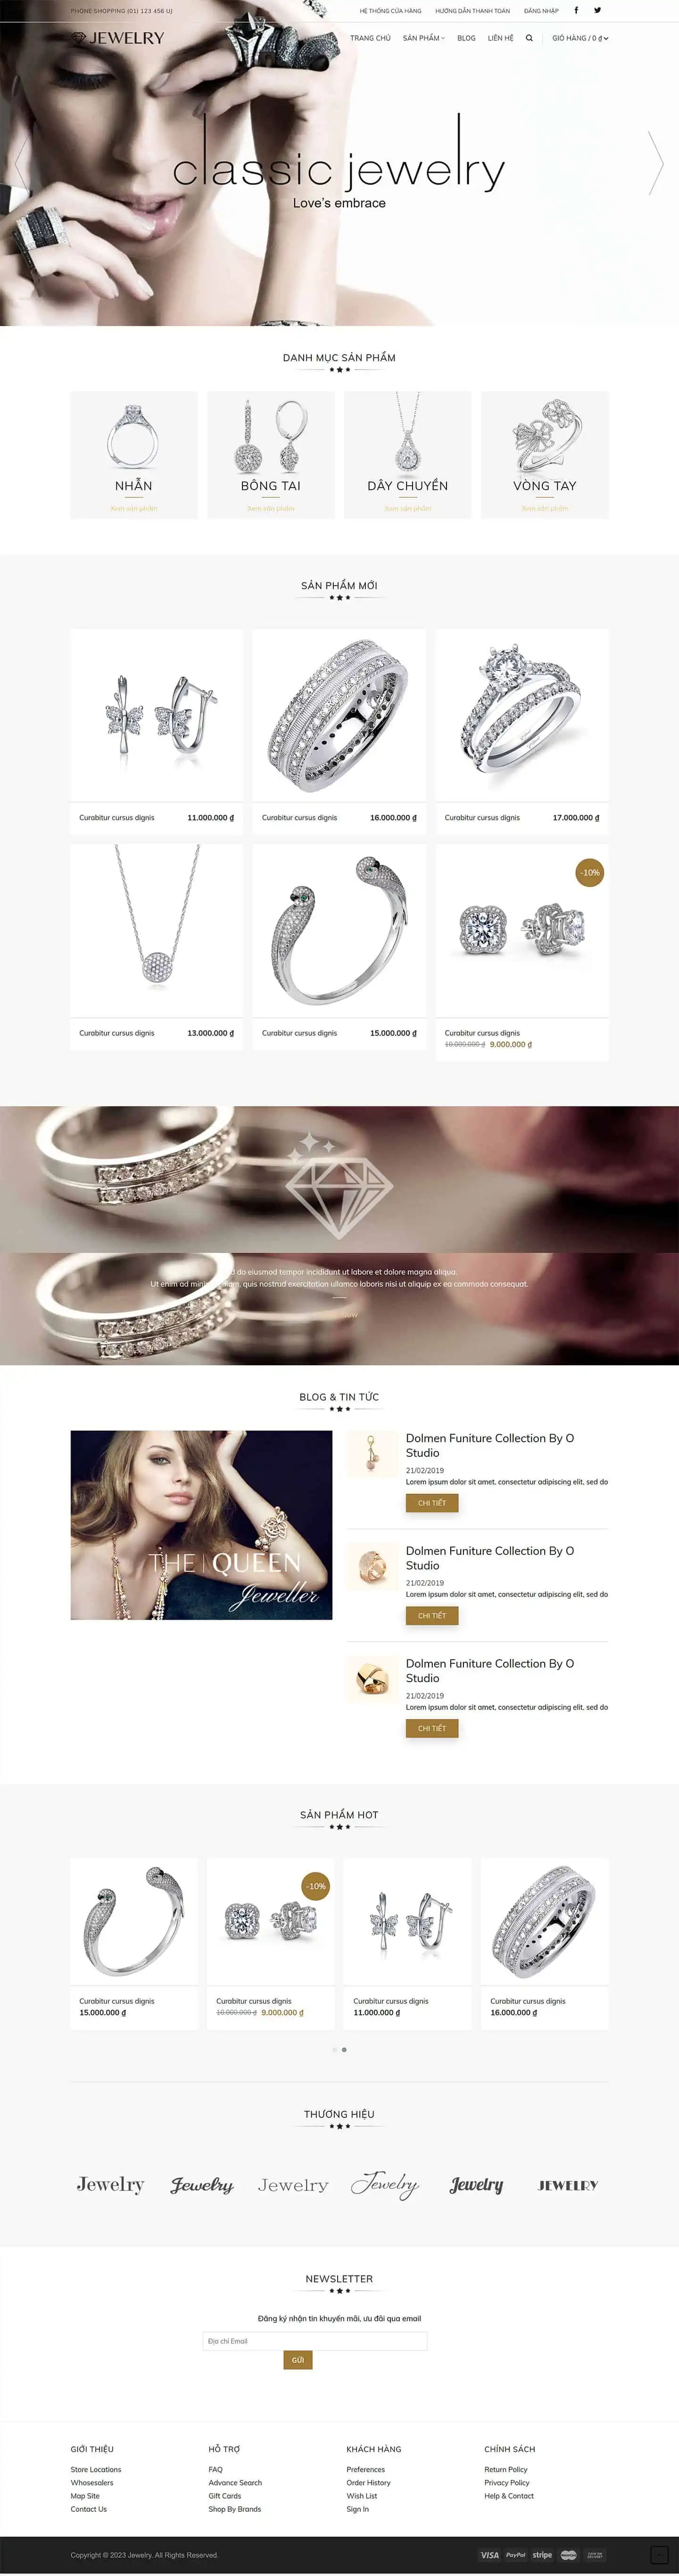 Jewelry – theme bán trang sức, nữ trang tuyệt đẹp 2